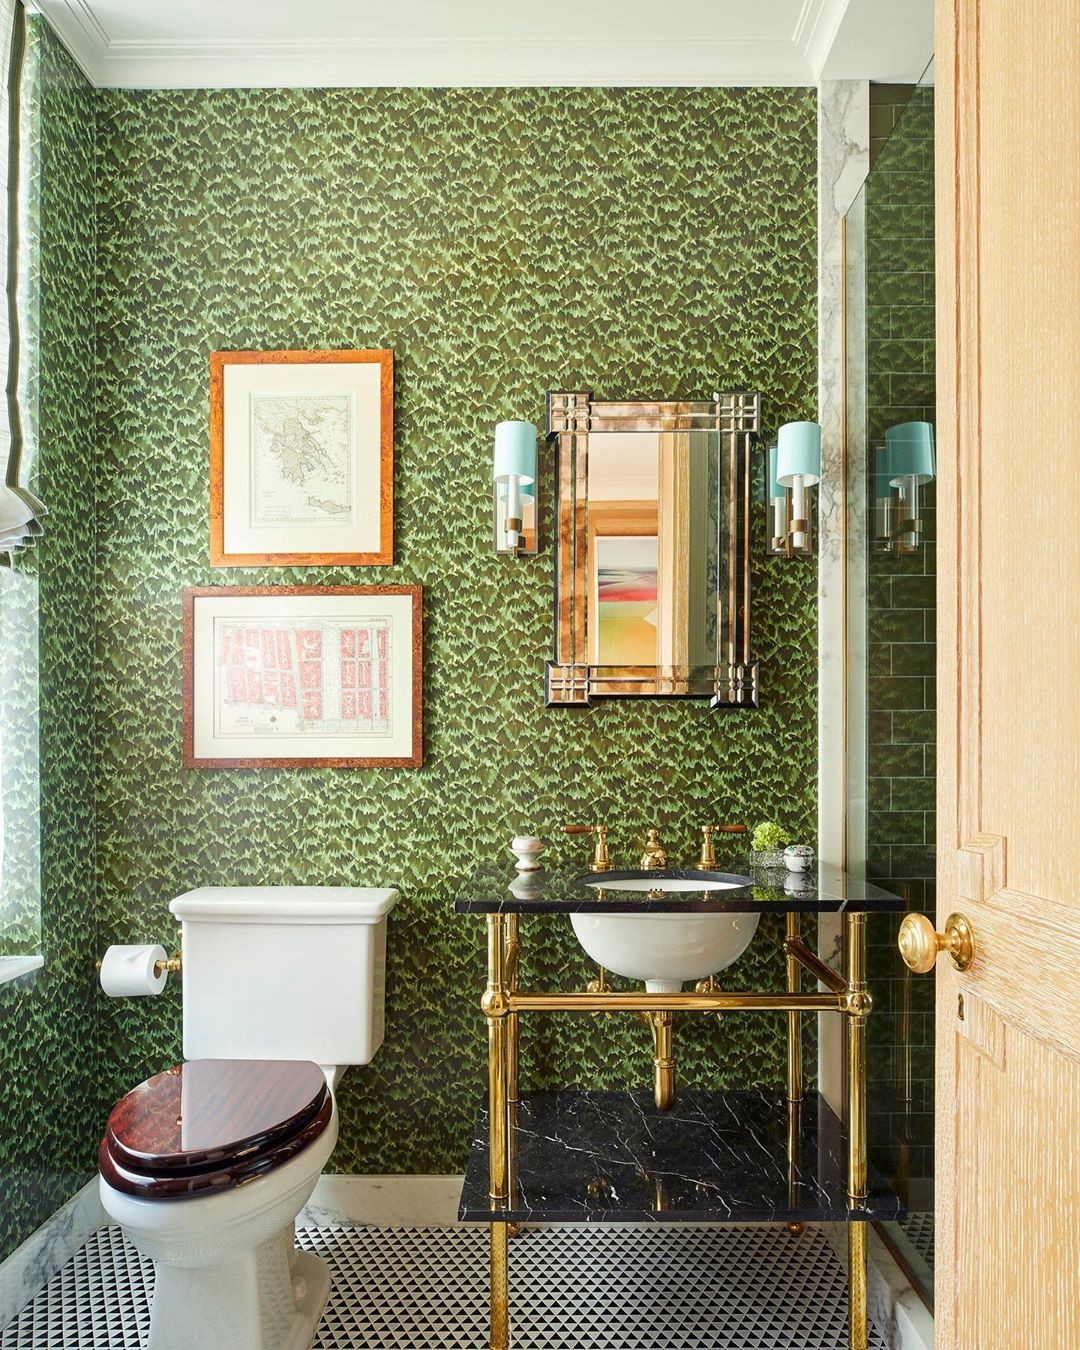 Décor do dia: banheiro com papel de parede verde e azulejo geométrico (Foto: Divulgação)